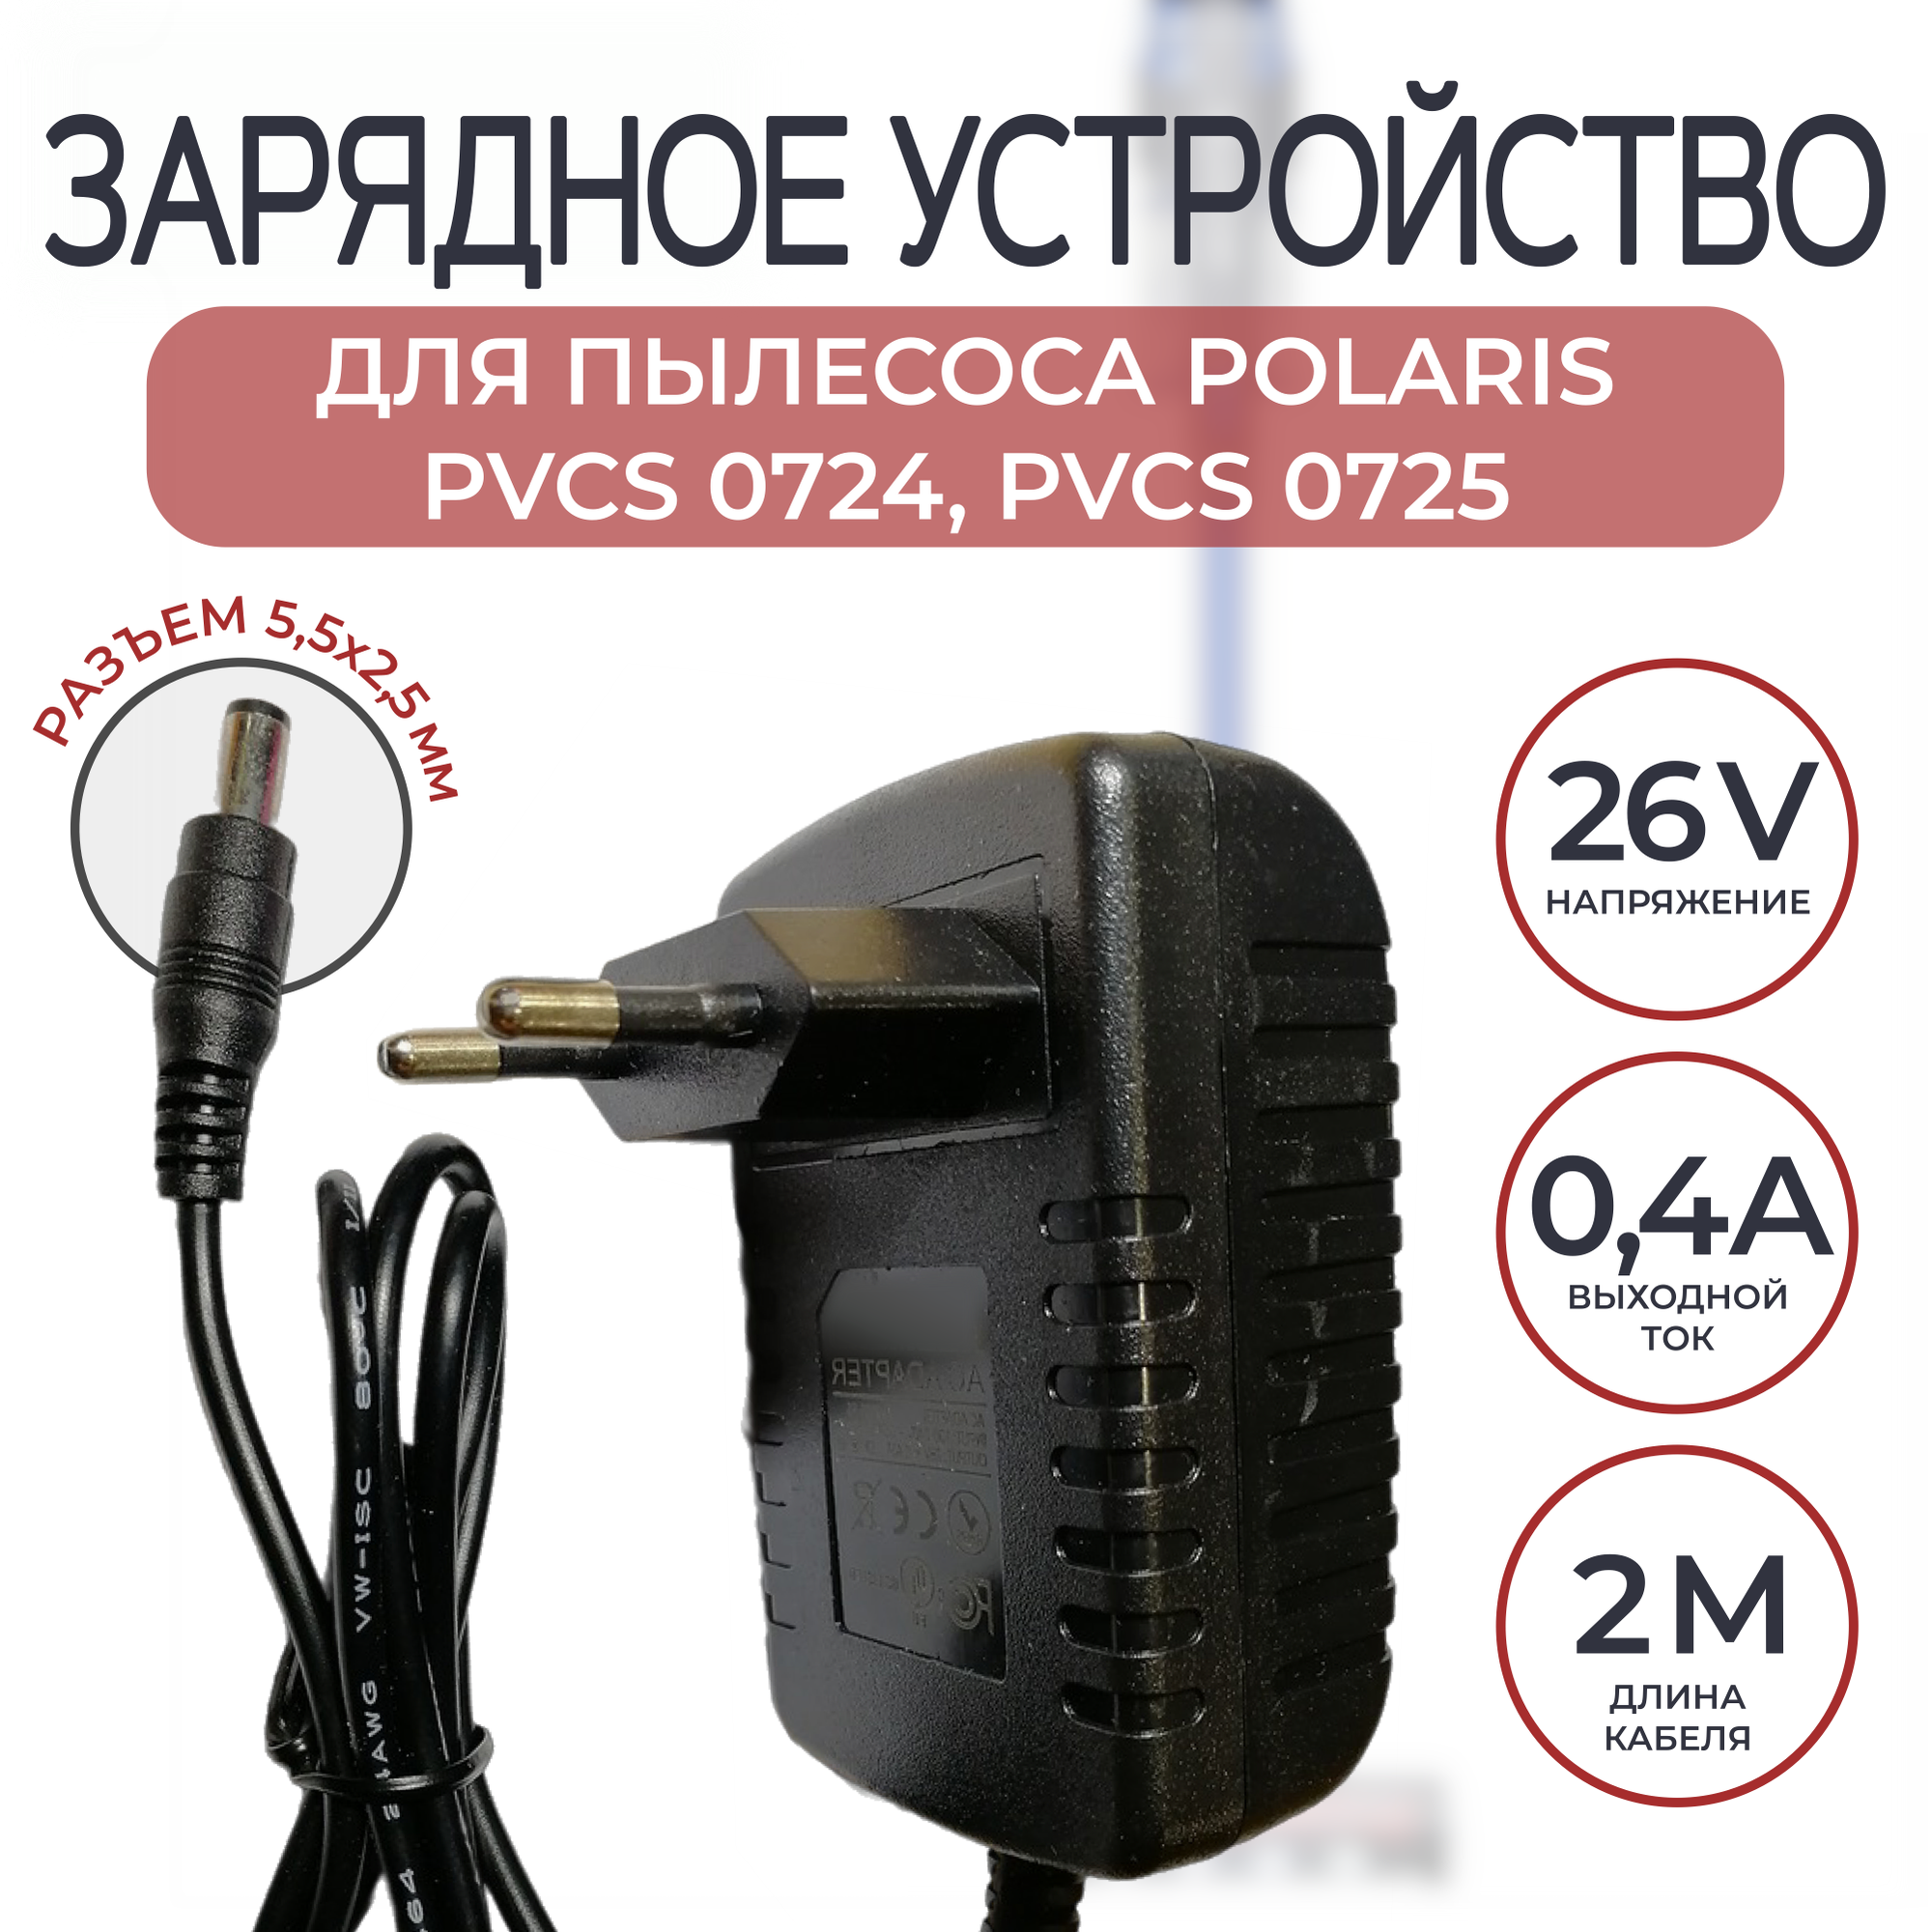 Зарядное устройство, блок питания для пылесоса Polaris PVCS 0724/0725 26v 0.4a